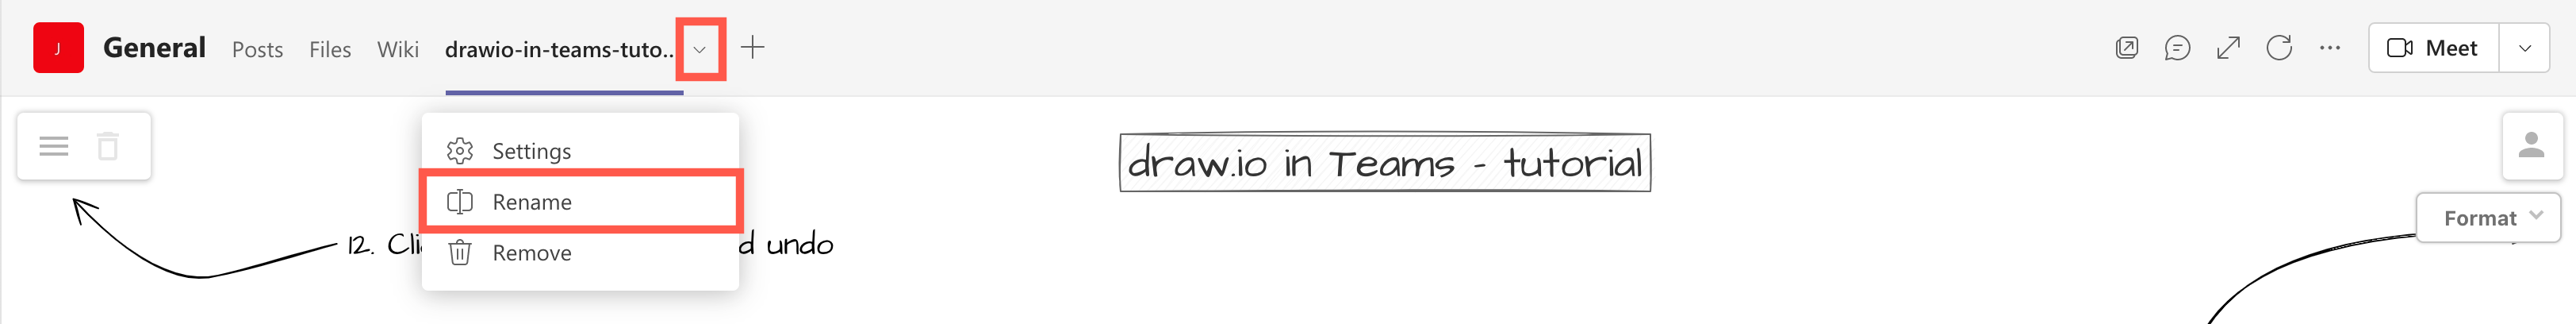 draw.io in Teams: Rename a diagram tab in Teams